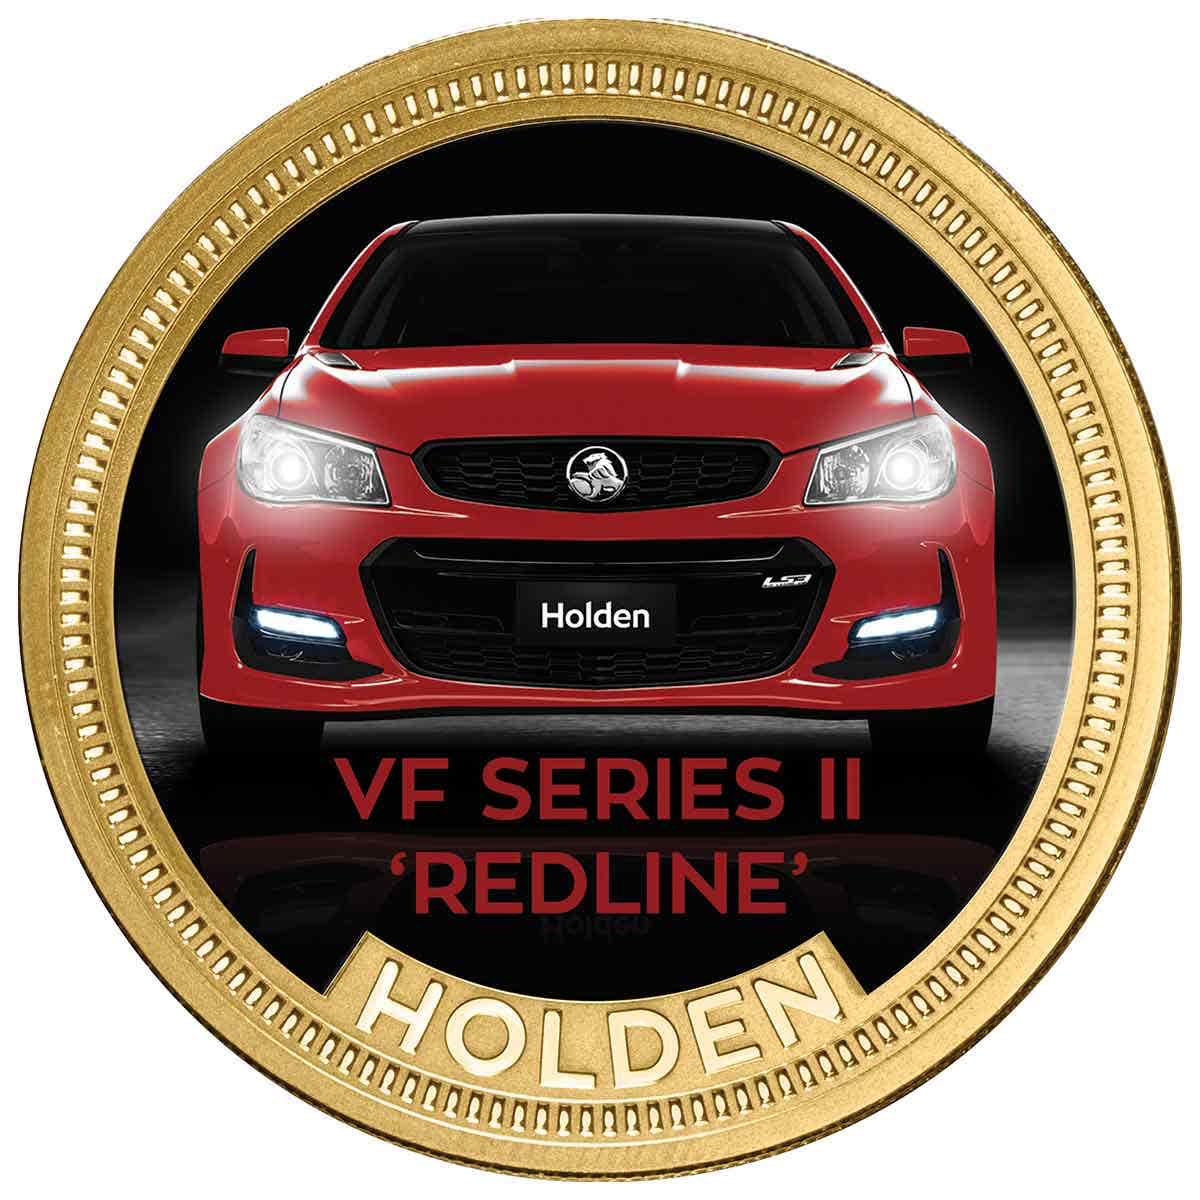 VF Series II 'Redline' Gold Plated Medallion